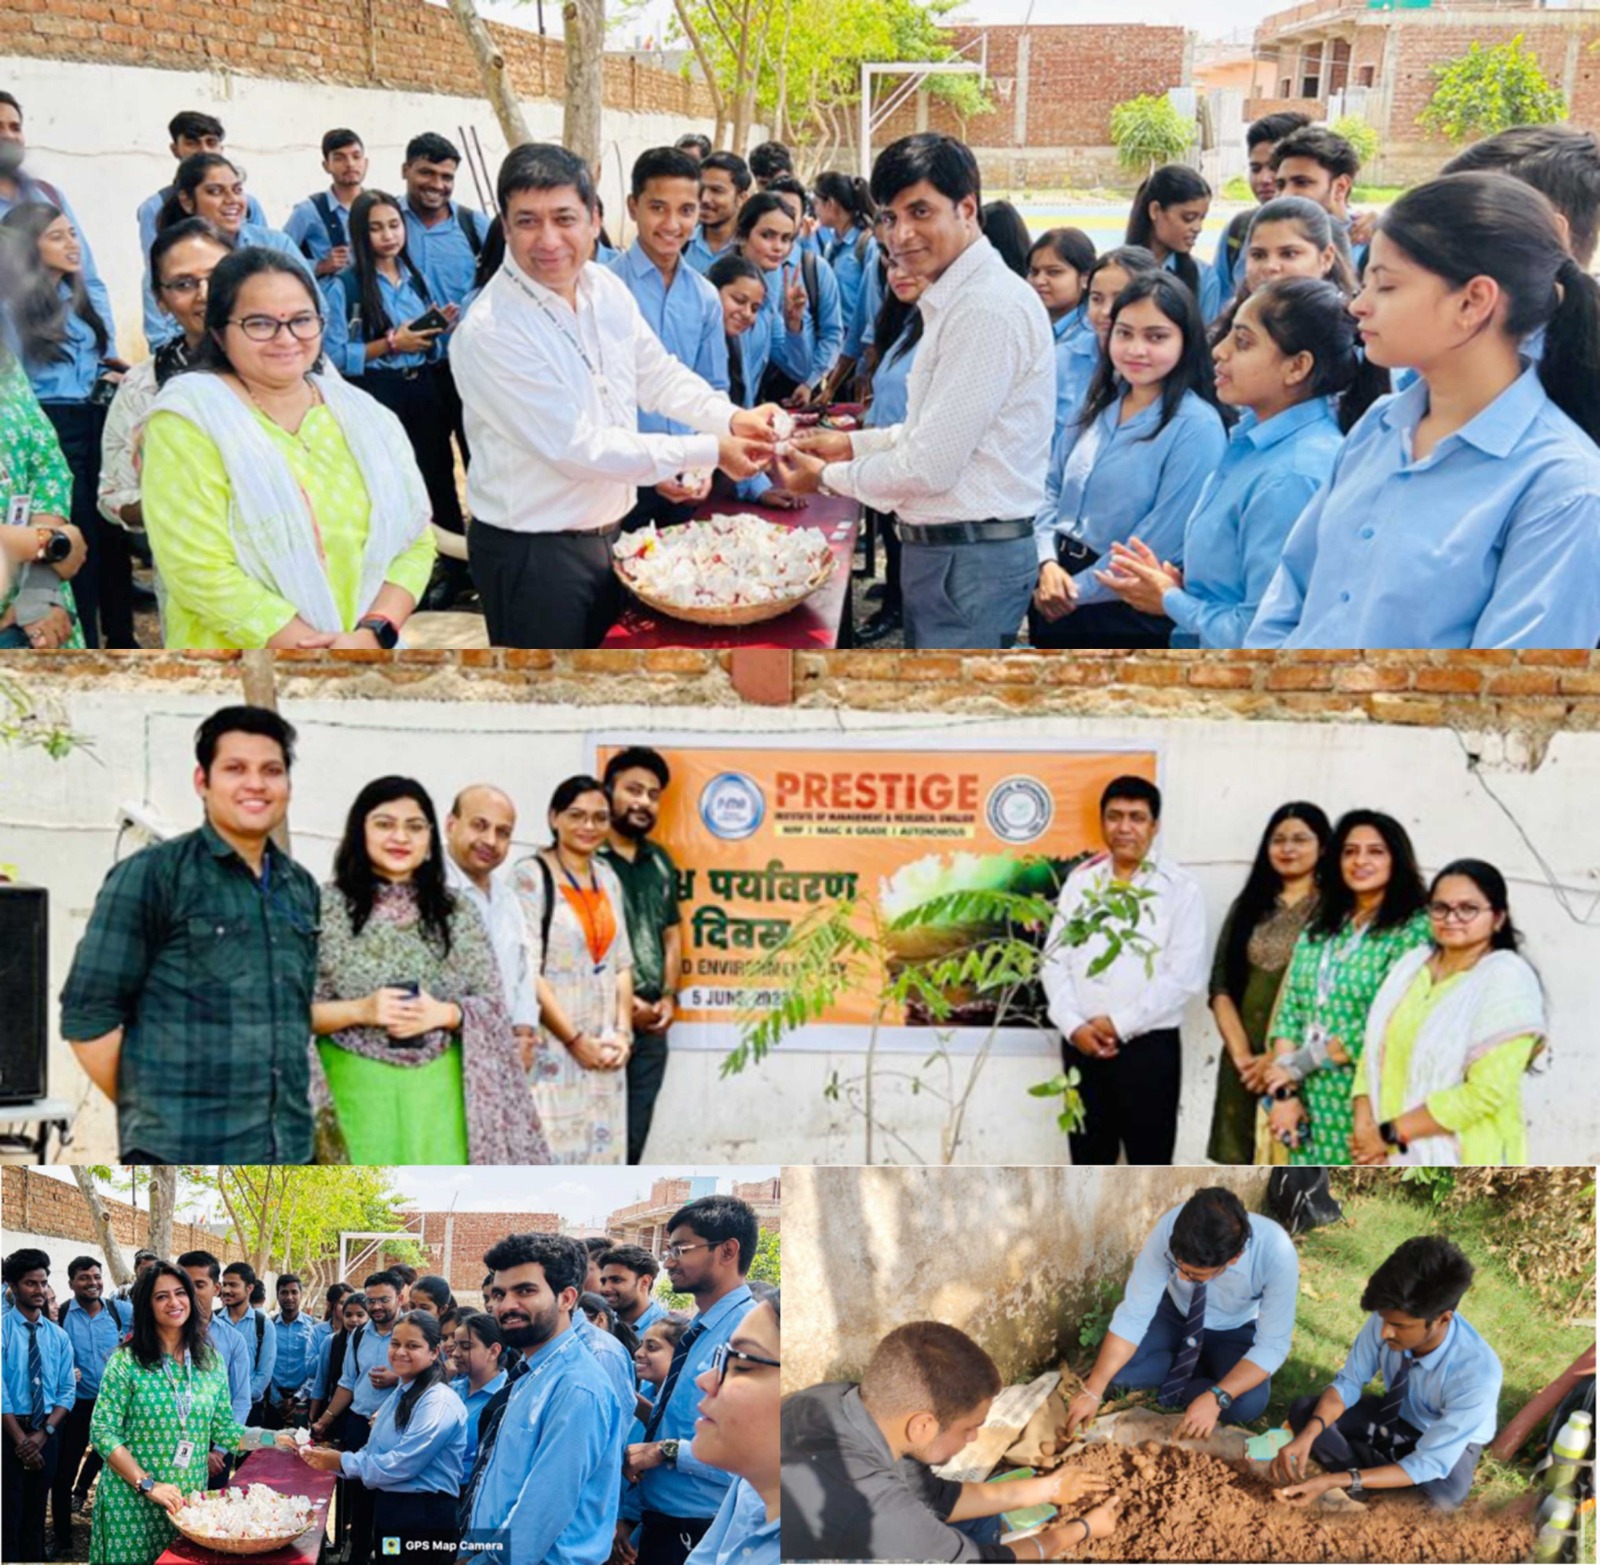 प्रेस्टीज प्रबंधन एवं शोध संस्थान ग्वालियर में मनाया गया पर्यावरण दिवस | New India Times